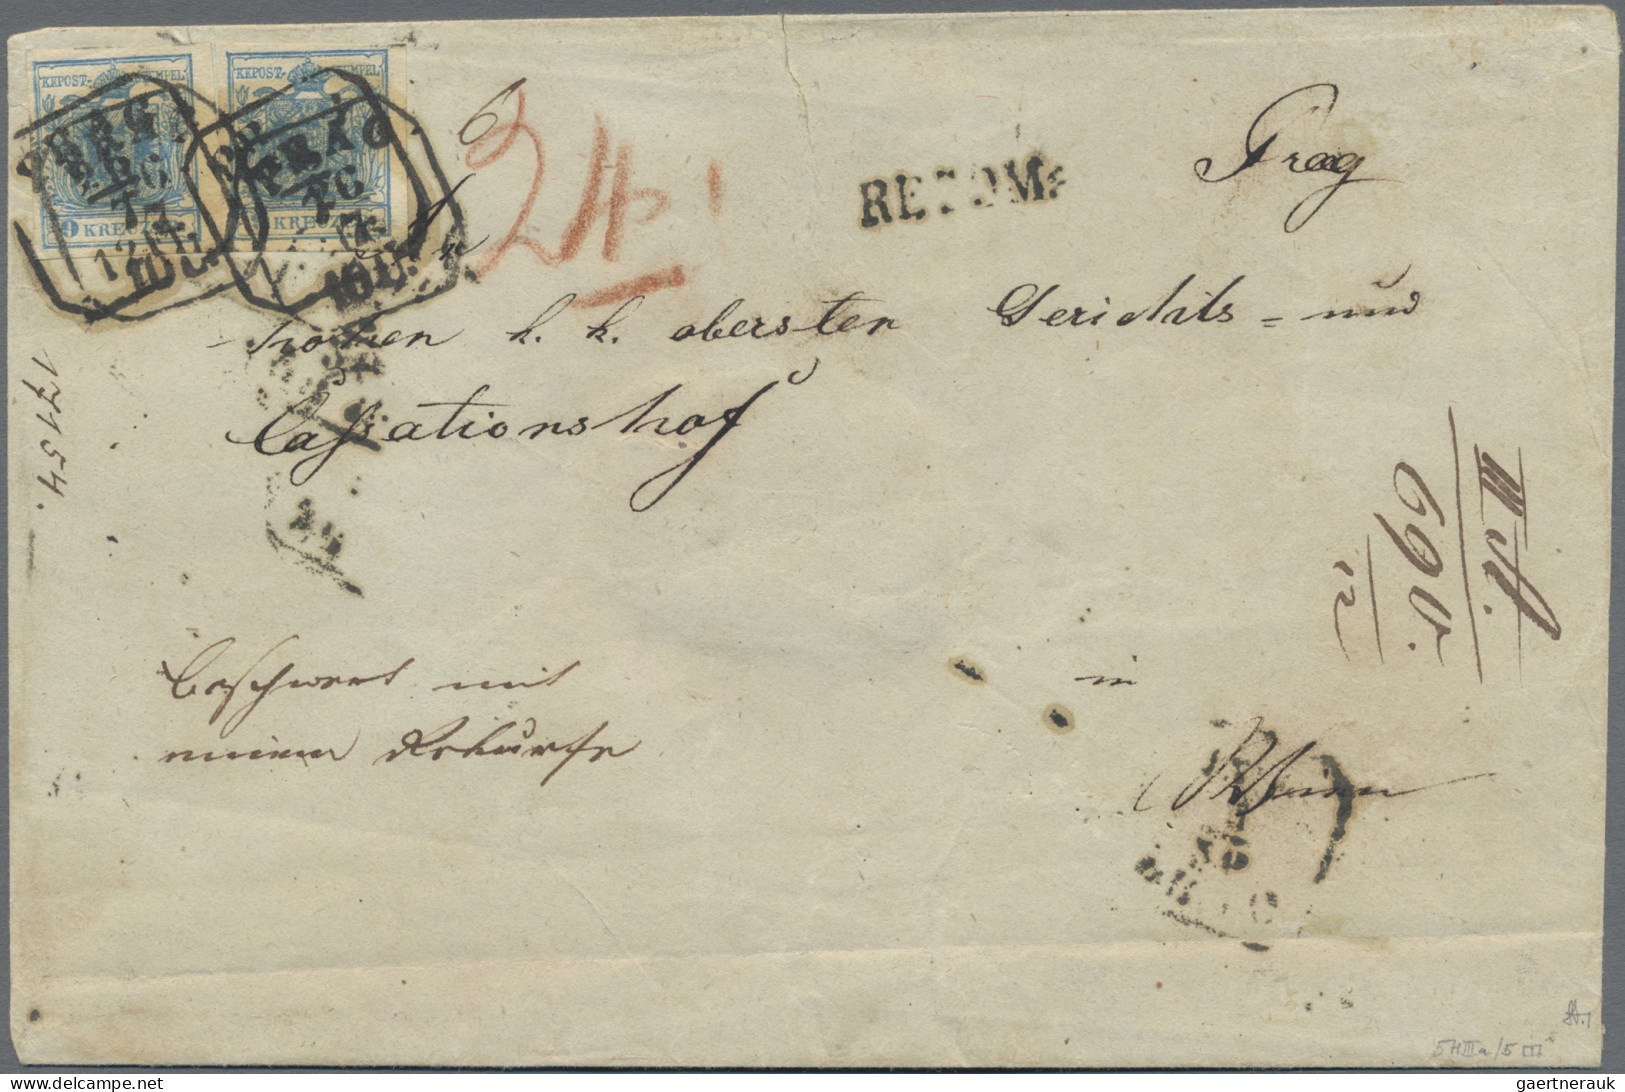 Österreich: 1850, 9 Kr. Blau, Handpapier, Type IIa, Waagerechtes Paar (Vortrenns - Lettres & Documents